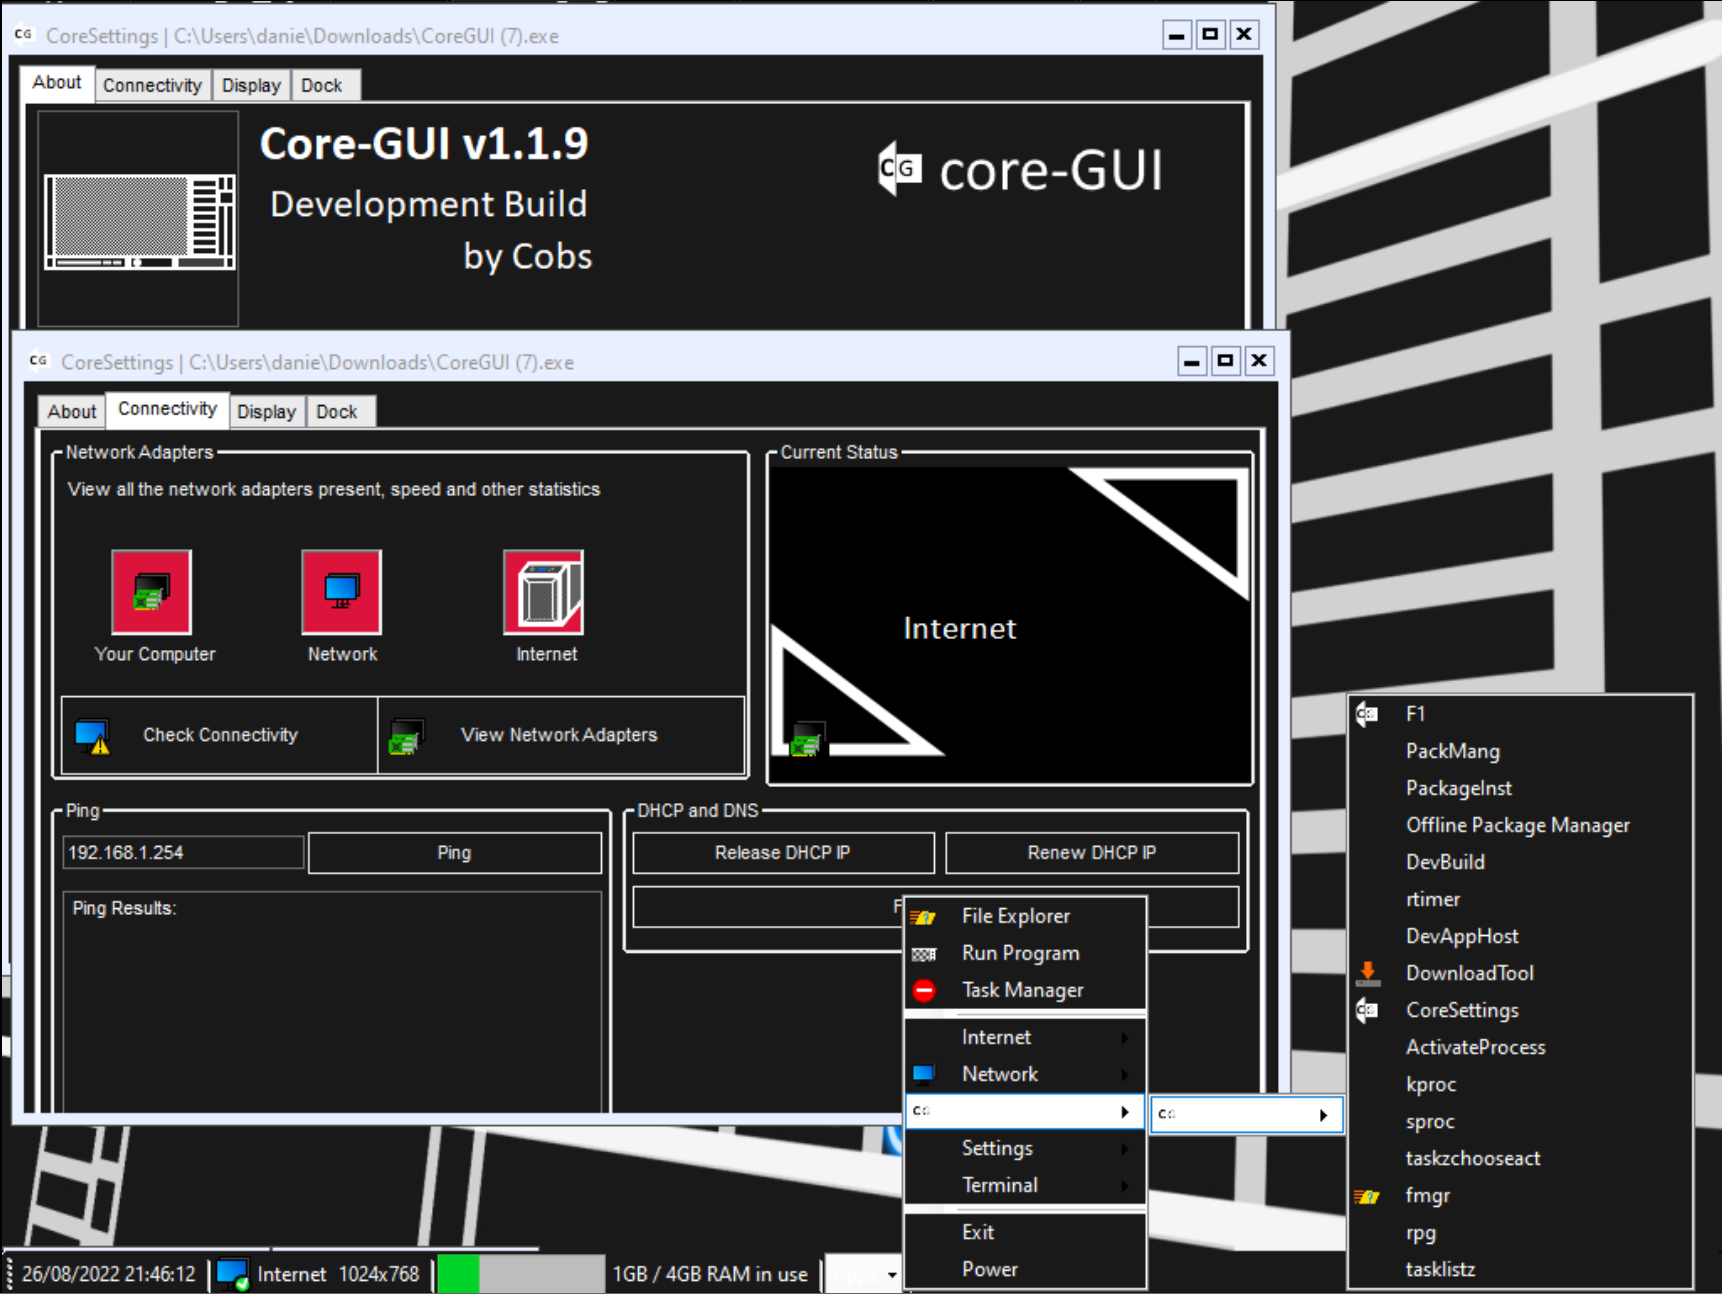 CoreGUI V1.1.9.png